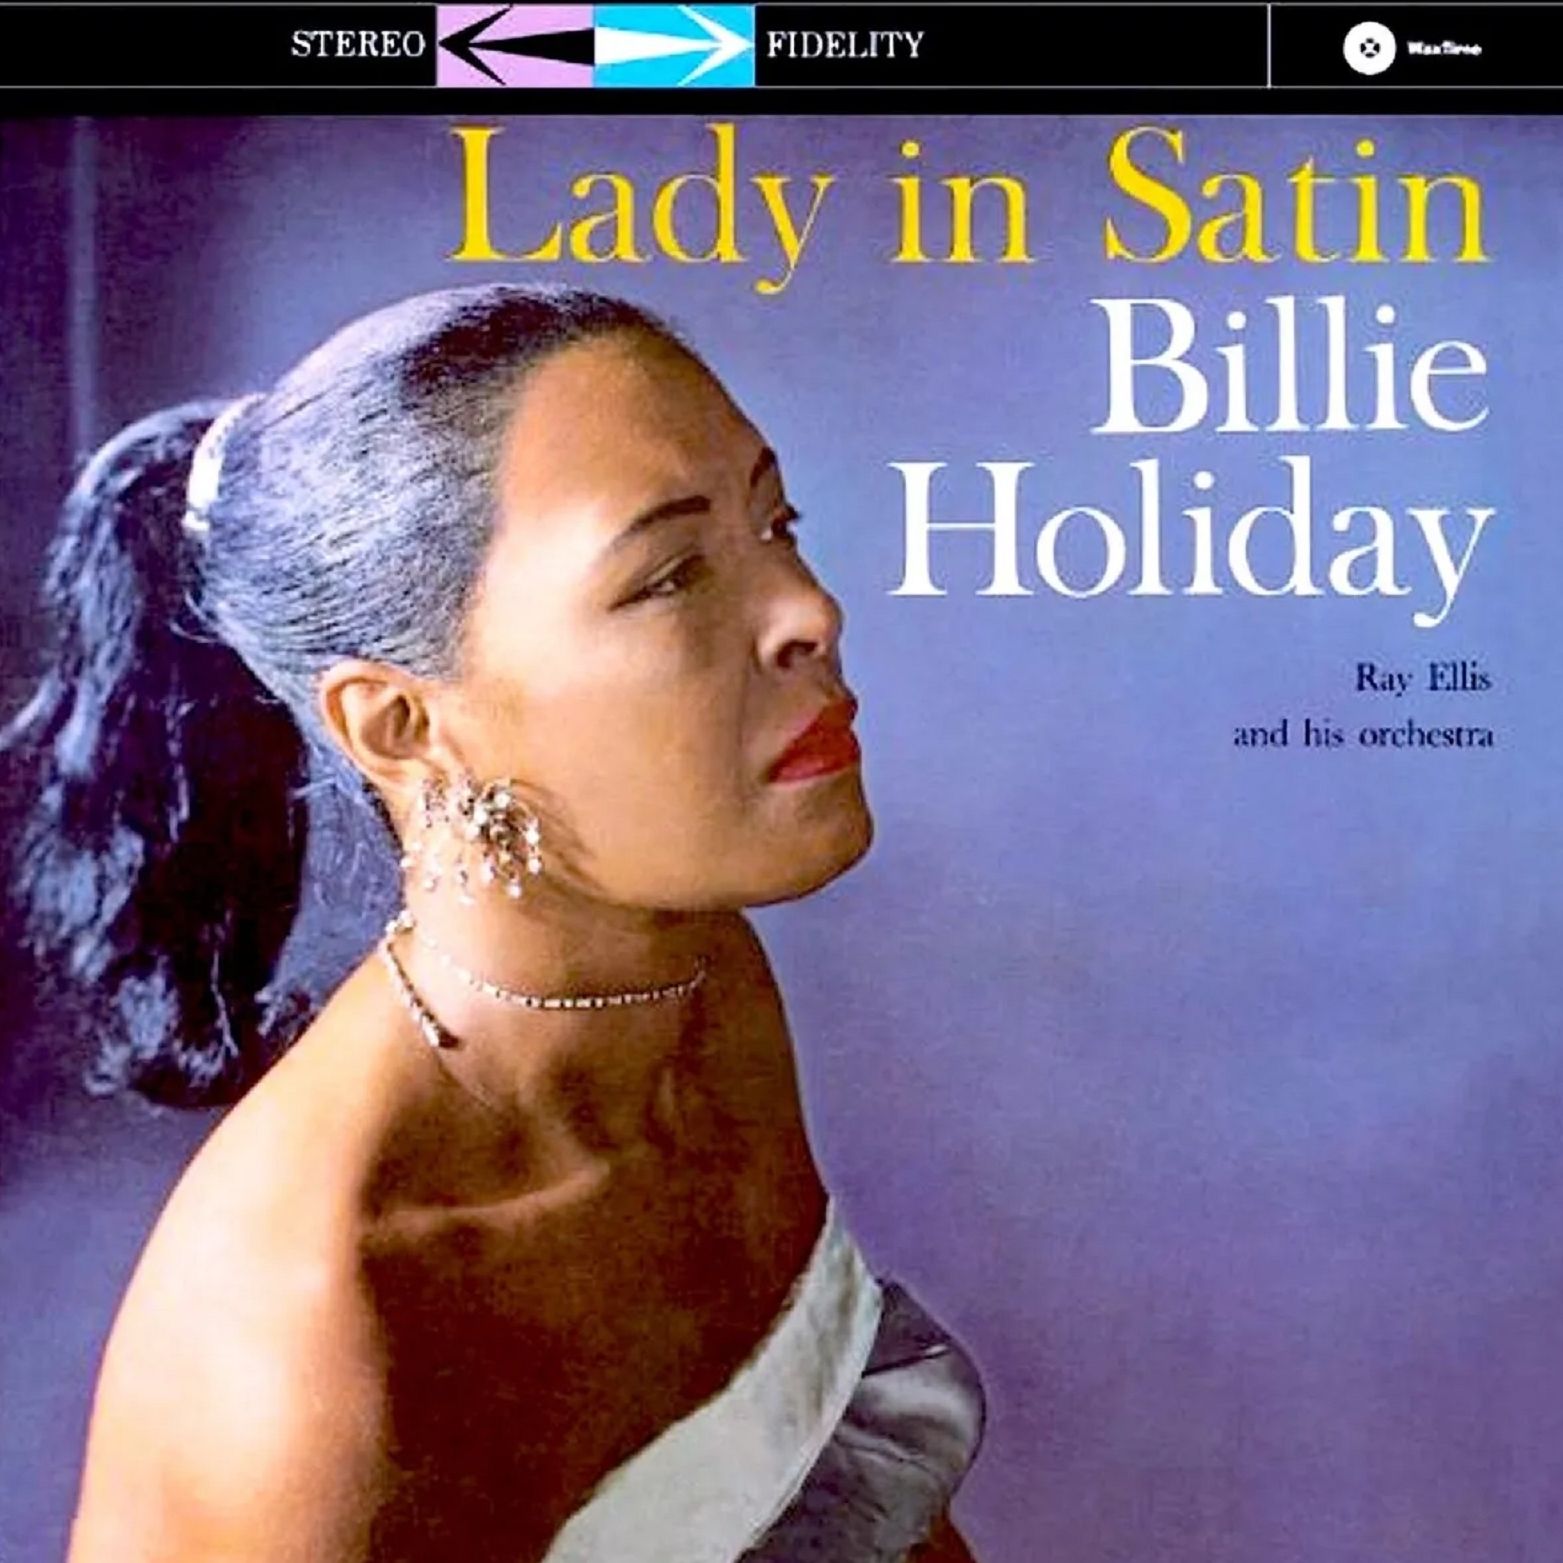 Jazz es finde - Billie Holiday nació un 7 de abril - 07/04/24